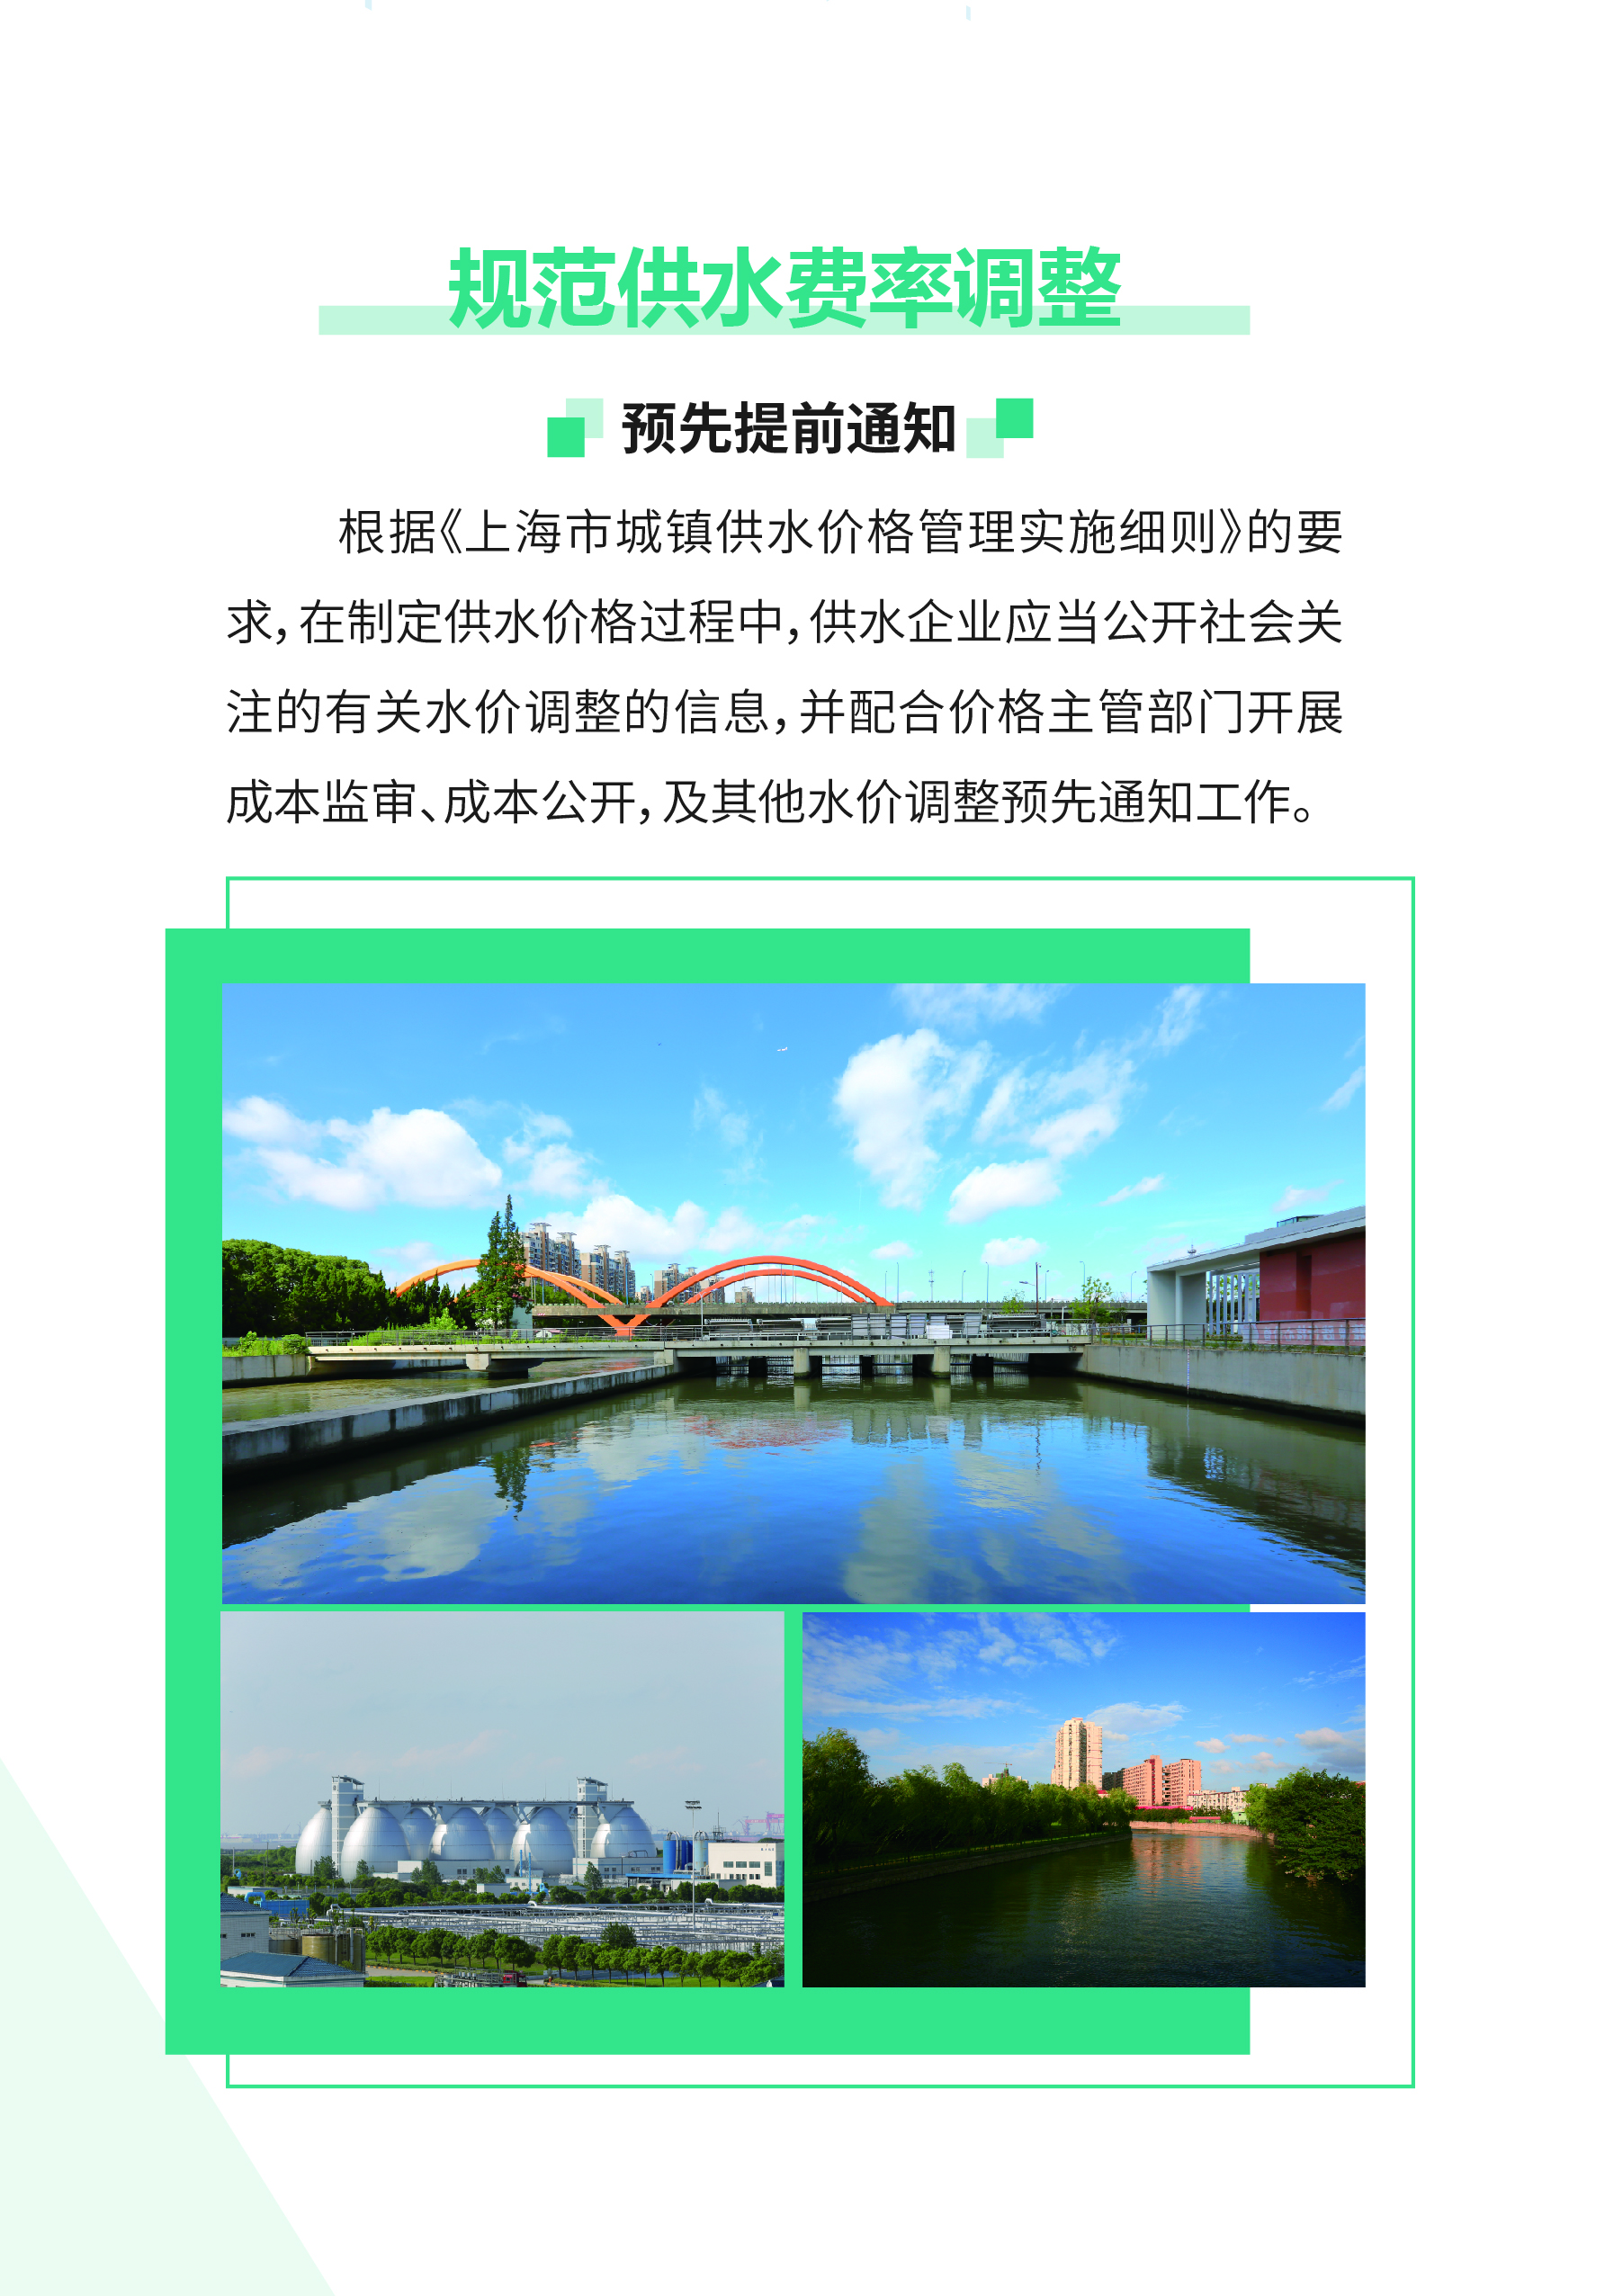 0515-上海供排水接入改革6.0版_页面_08.jpg